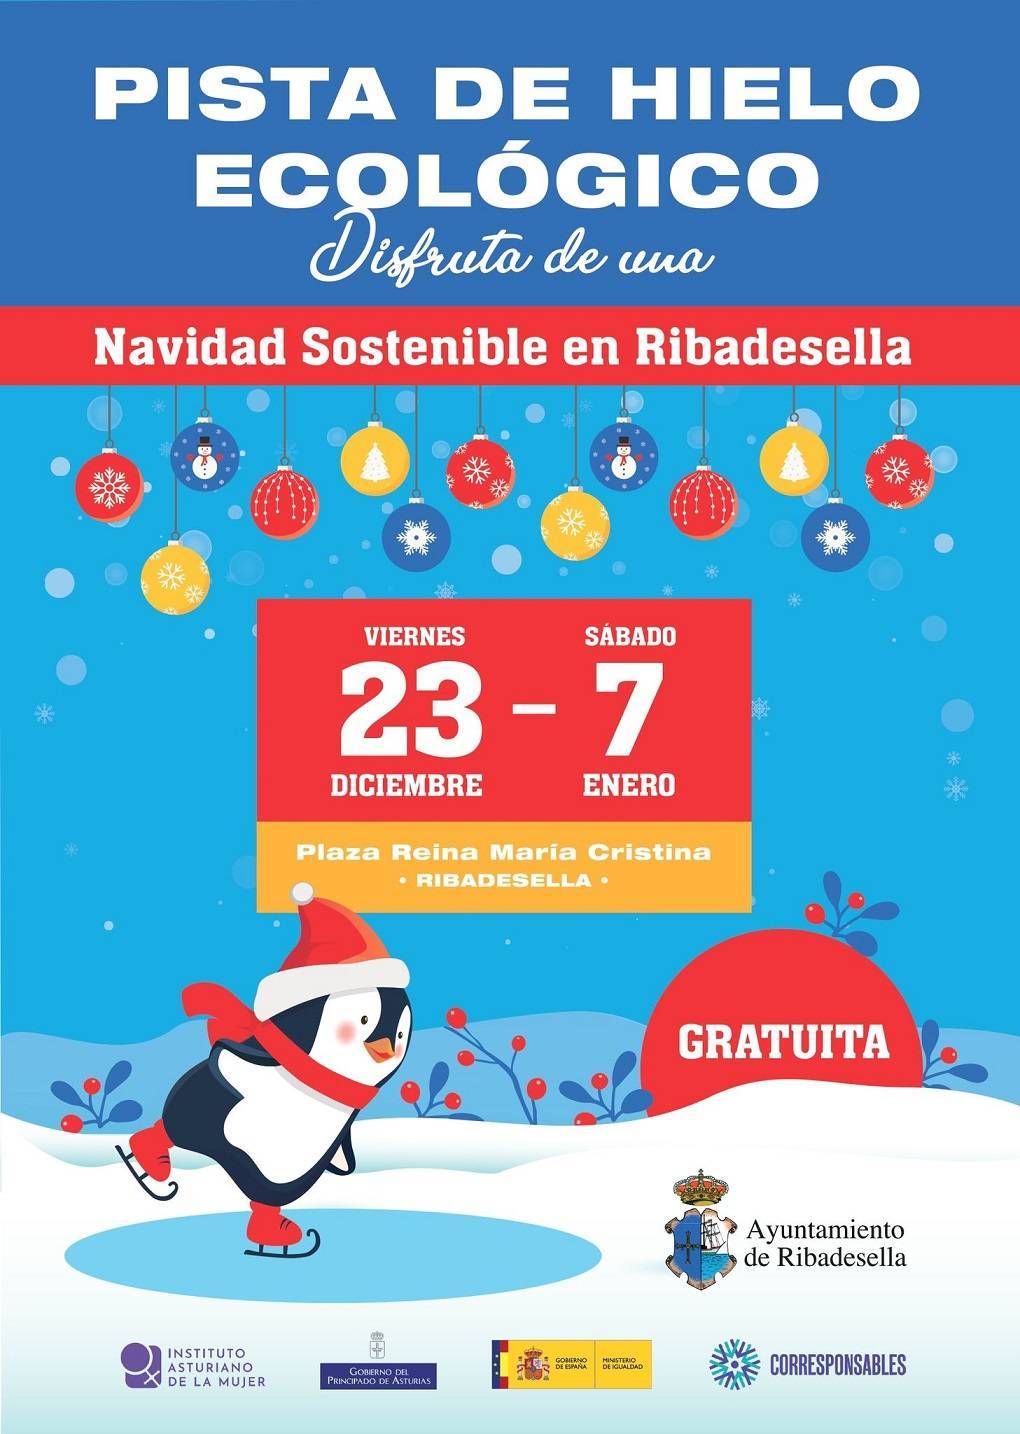 Pista de hielo ecológico (2022-2023) - Ribadesella (Asturias)